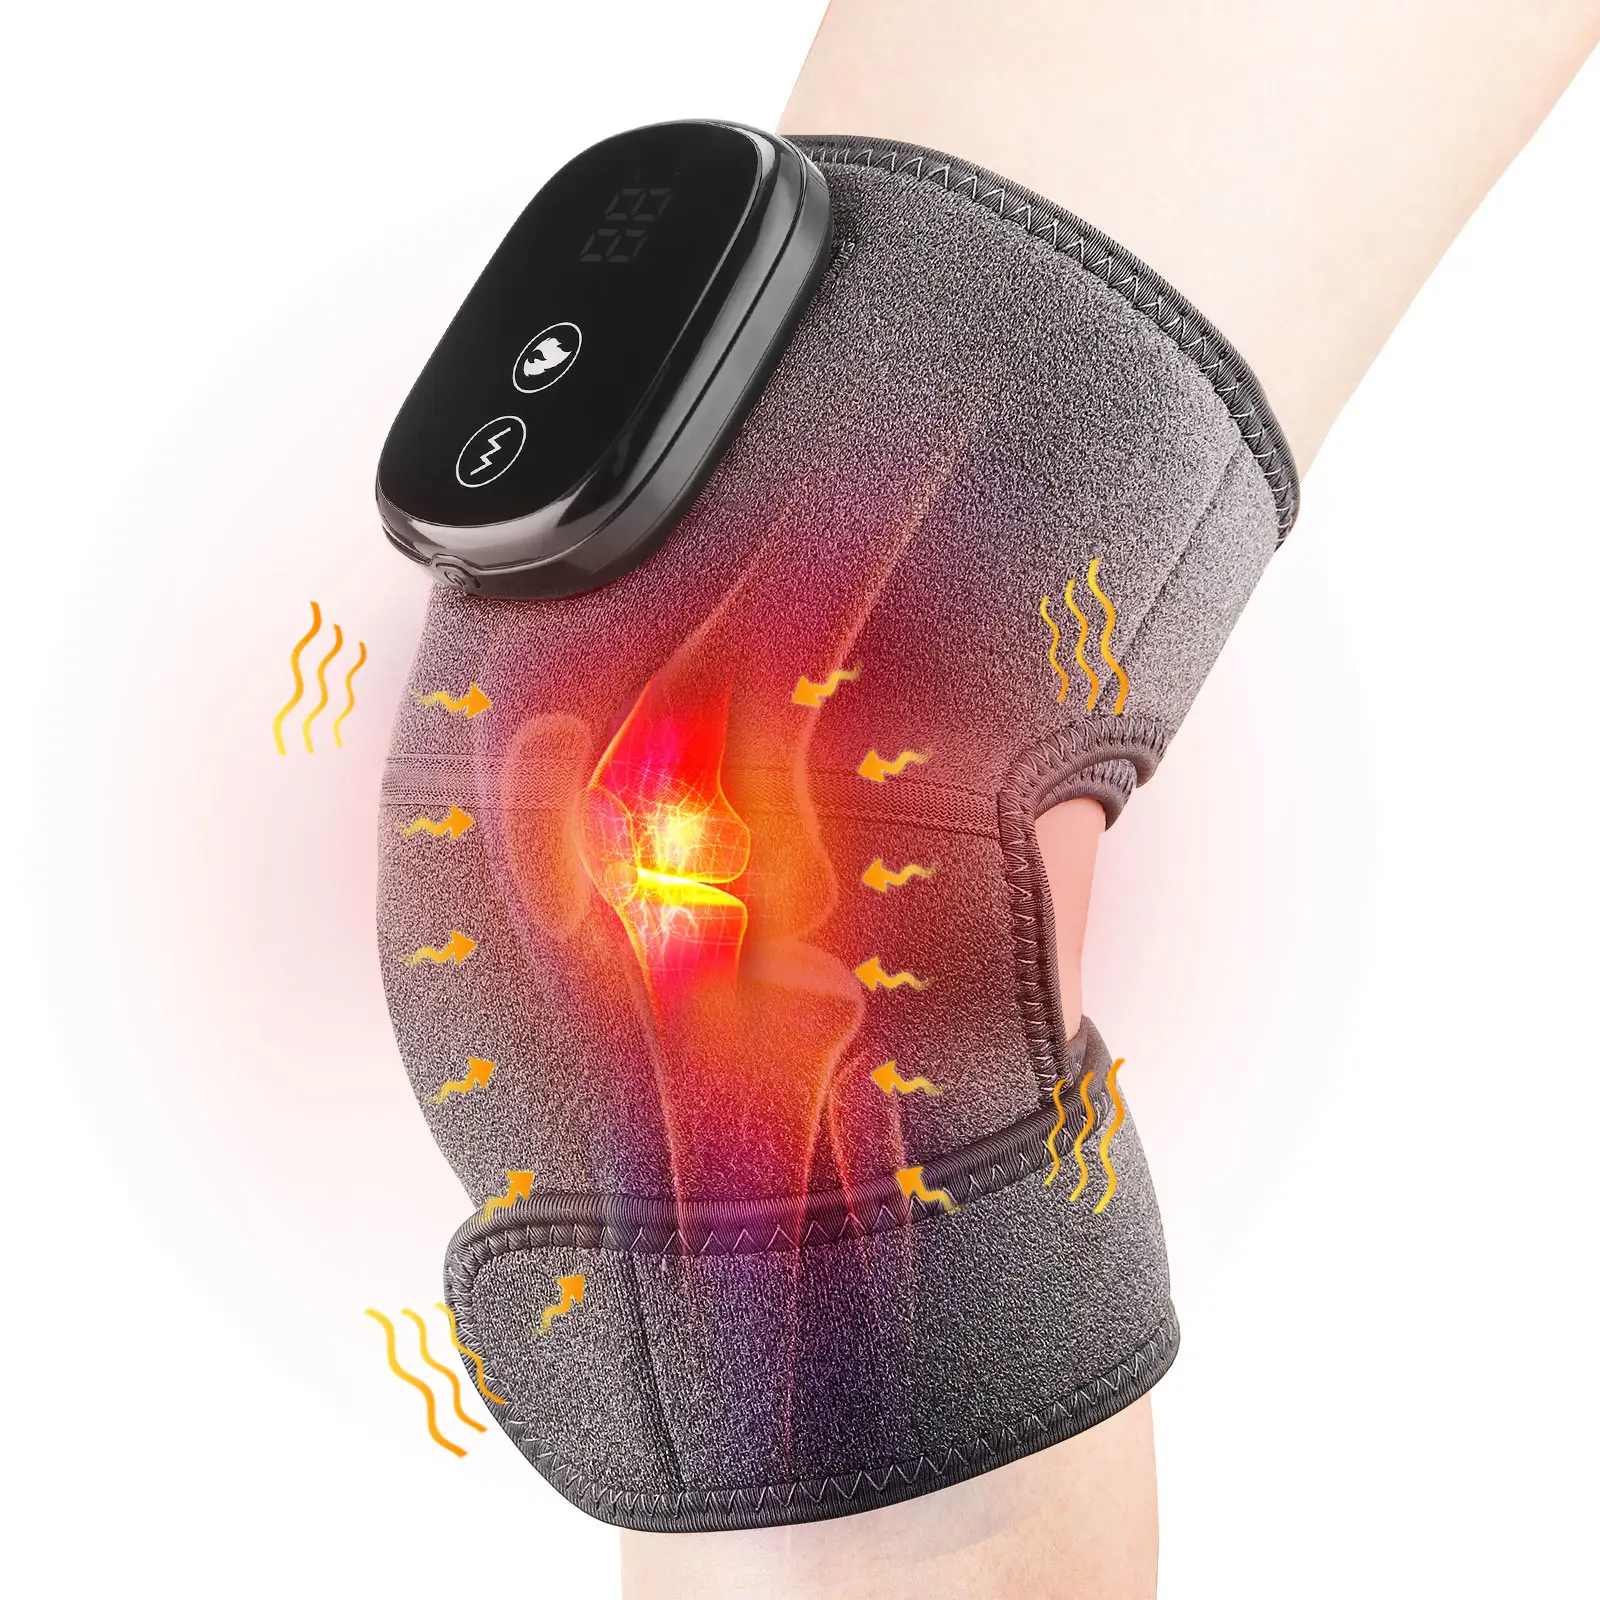 جهاز كهربائي تدليك حراري للركبة والكتف الركبة لاسلكي حراري خشب الدردار القدمين الباردة ذكي بالأشعة تحت الحمراء علاج